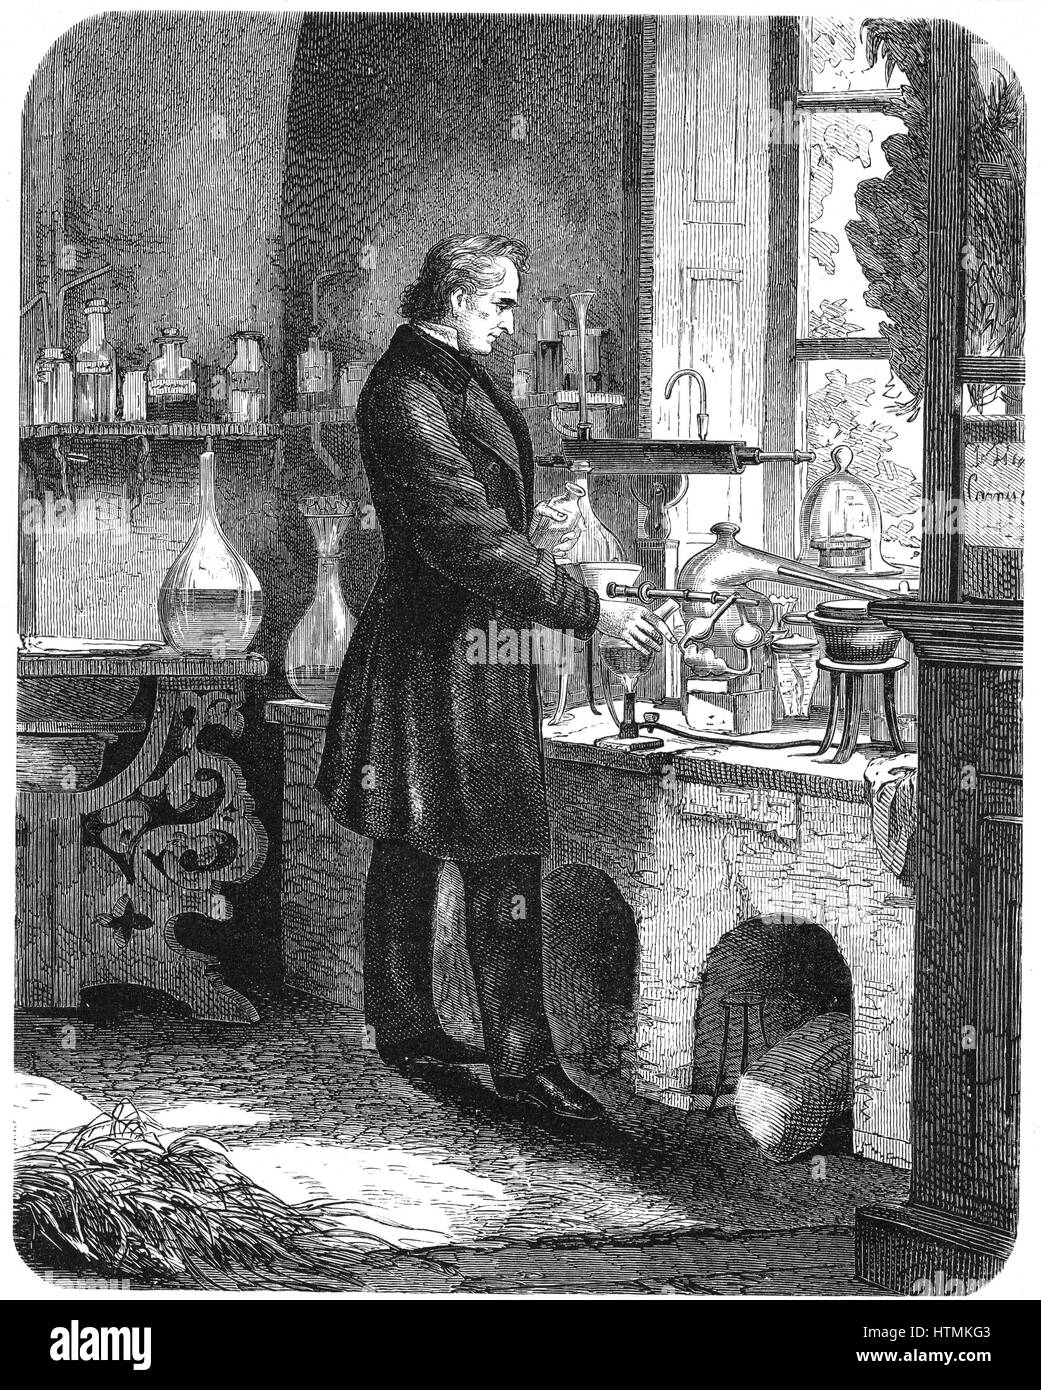 Justus von liebig (1803-1873) químico alemán, trabajando en su laboratorio. Grabado de 'El educador popular", Cassell, Petter y Galpin, Londres (c1885) Foto de stock